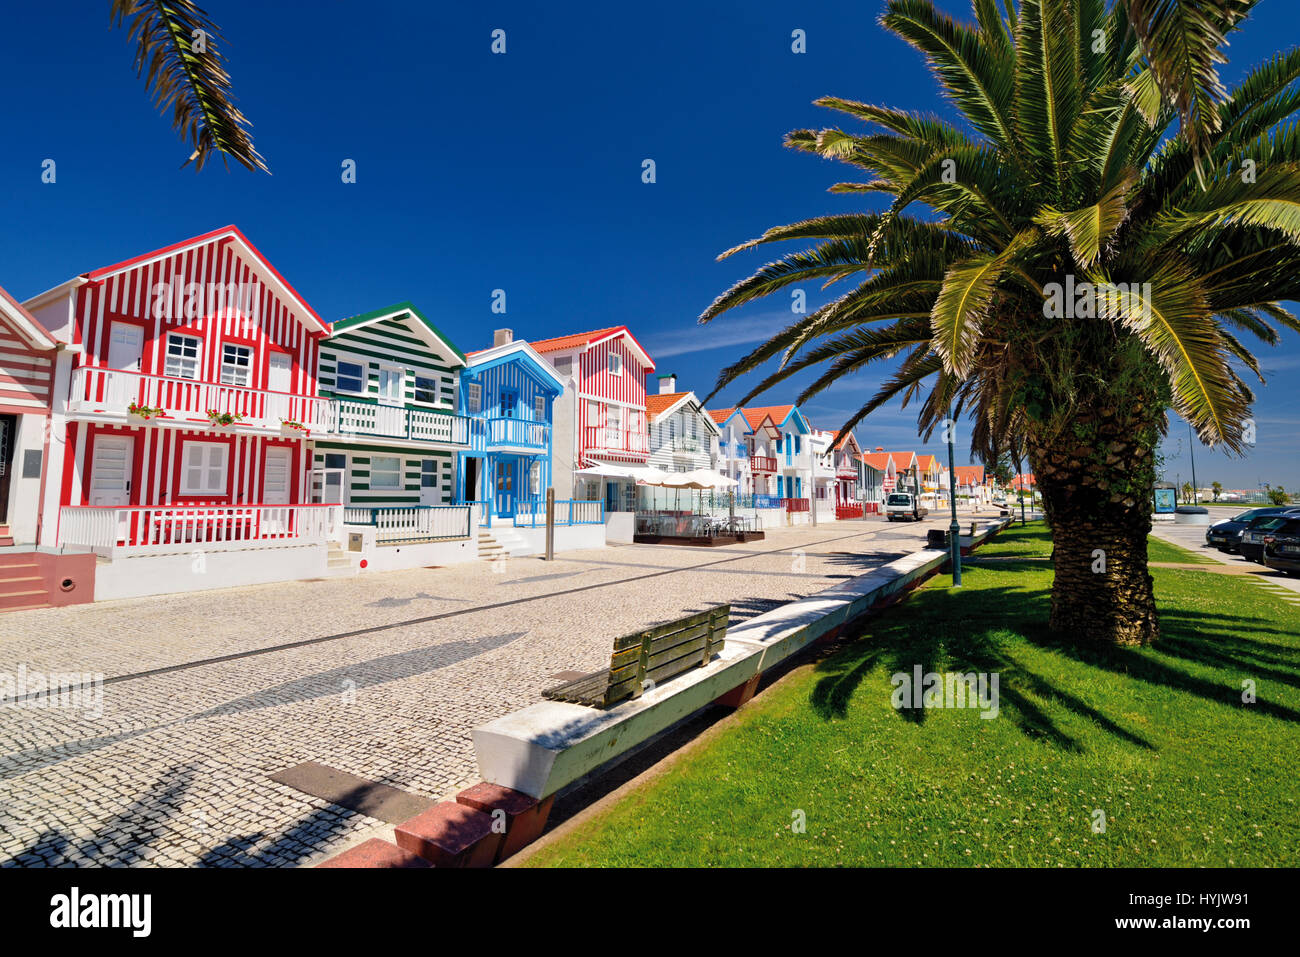 Portugal: coloridas casas de vacaciones en el pueblo costero de Costa Nova Foto de stock